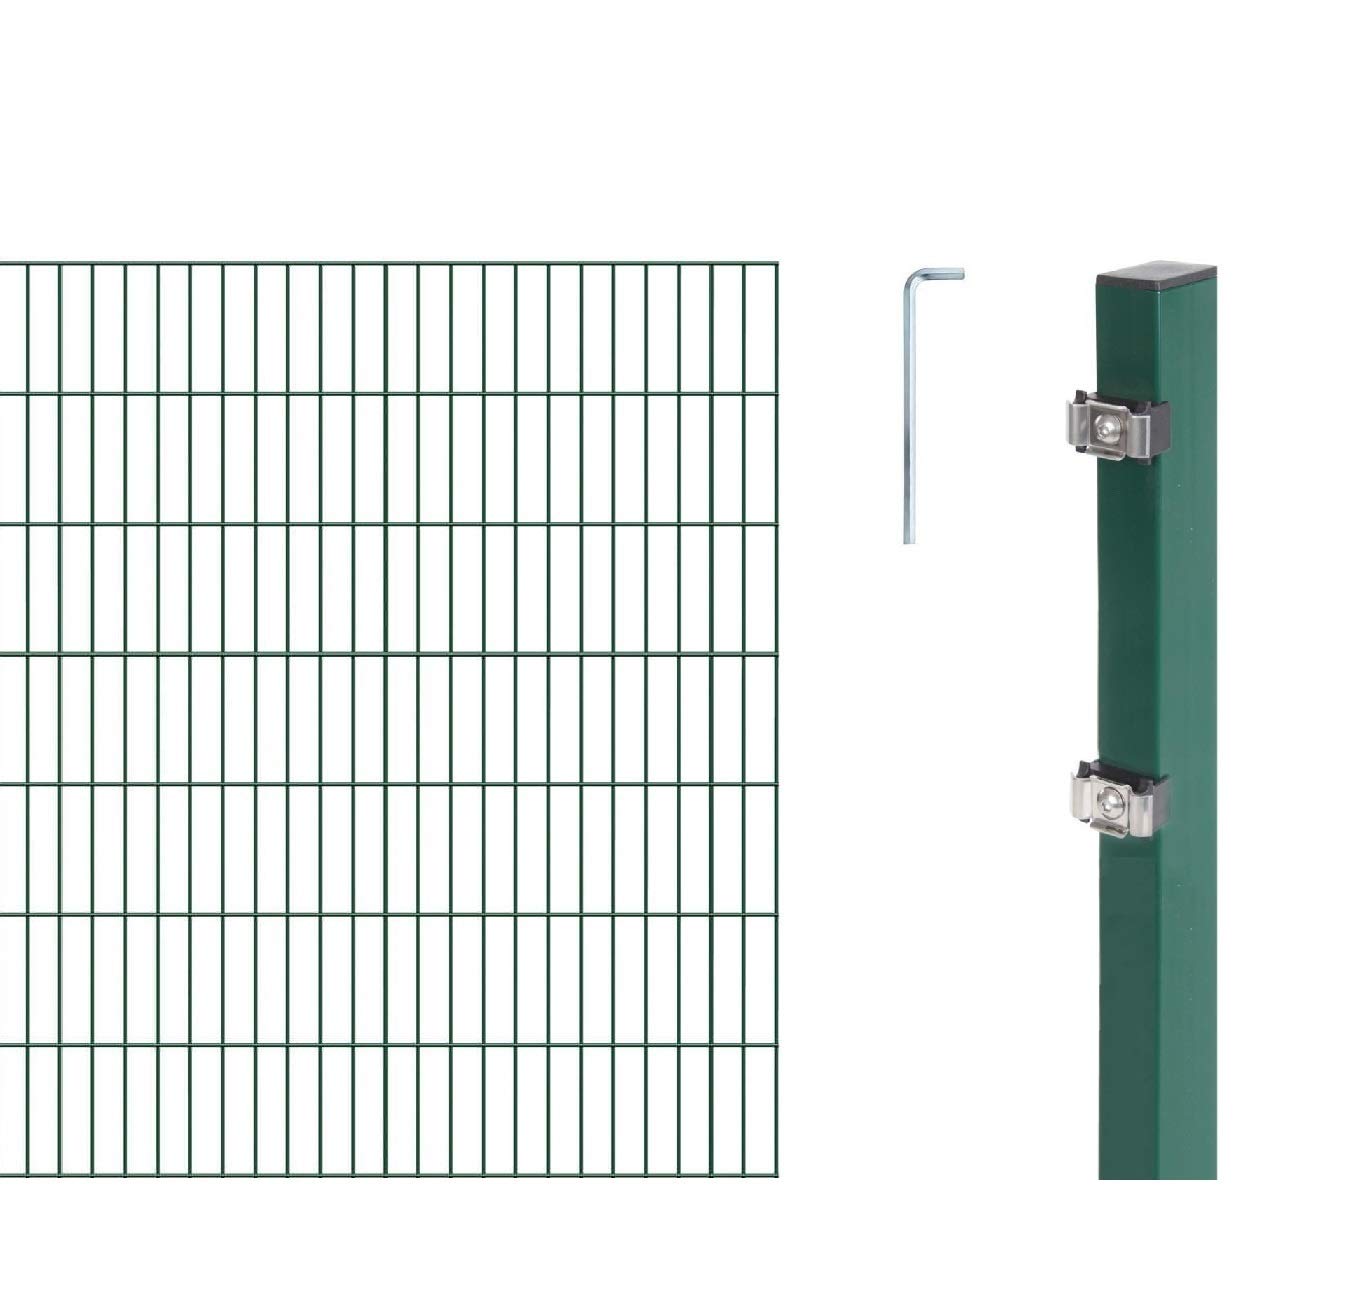 Alberts, grün GAH 651176 Doppelstabmattenzaun als 16 tlg. Zaun-Komplettset wahlweise in verschiedenen Farben | kunststoffbeschichtet, 140 cm | Länge 14 m, Höhe: 1400 mm